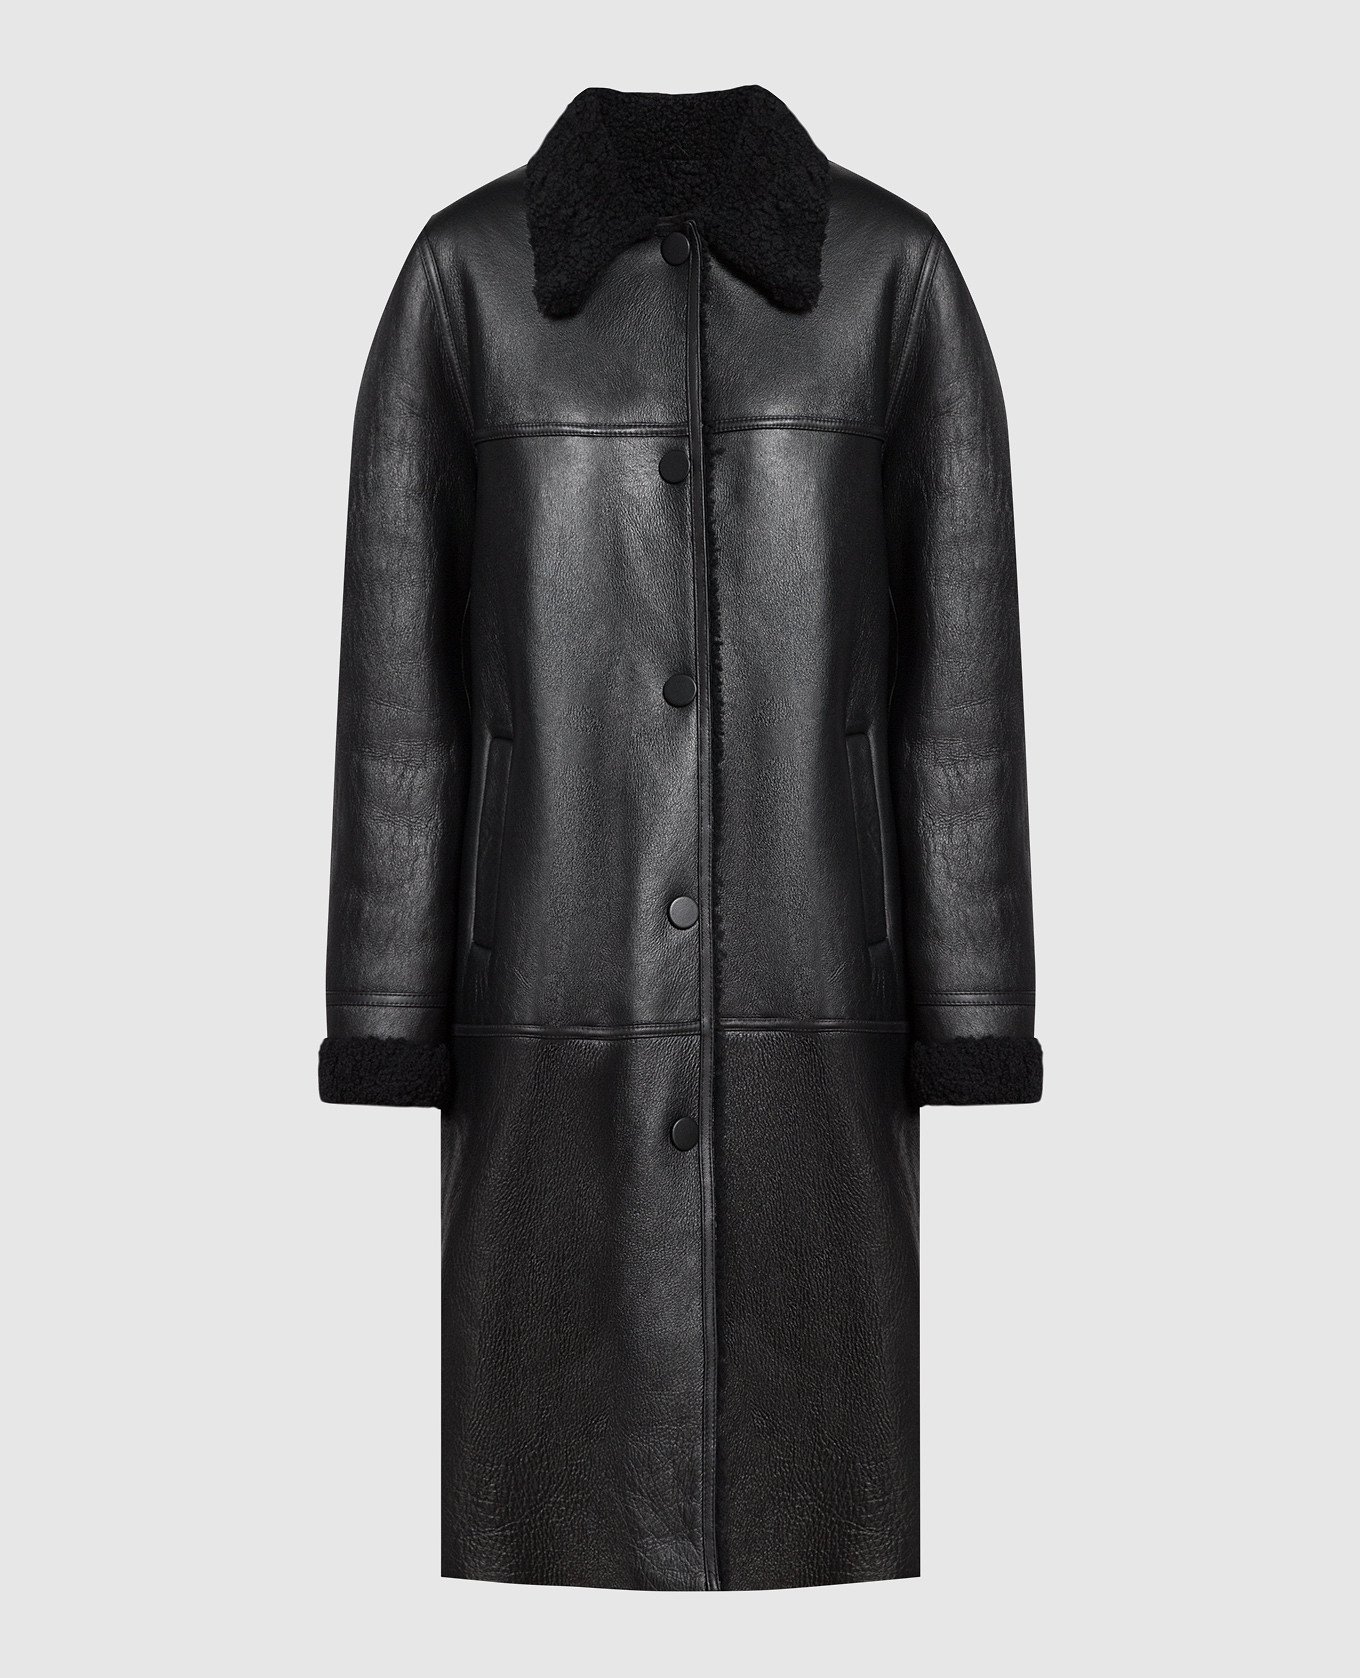 Black sheepskin coat